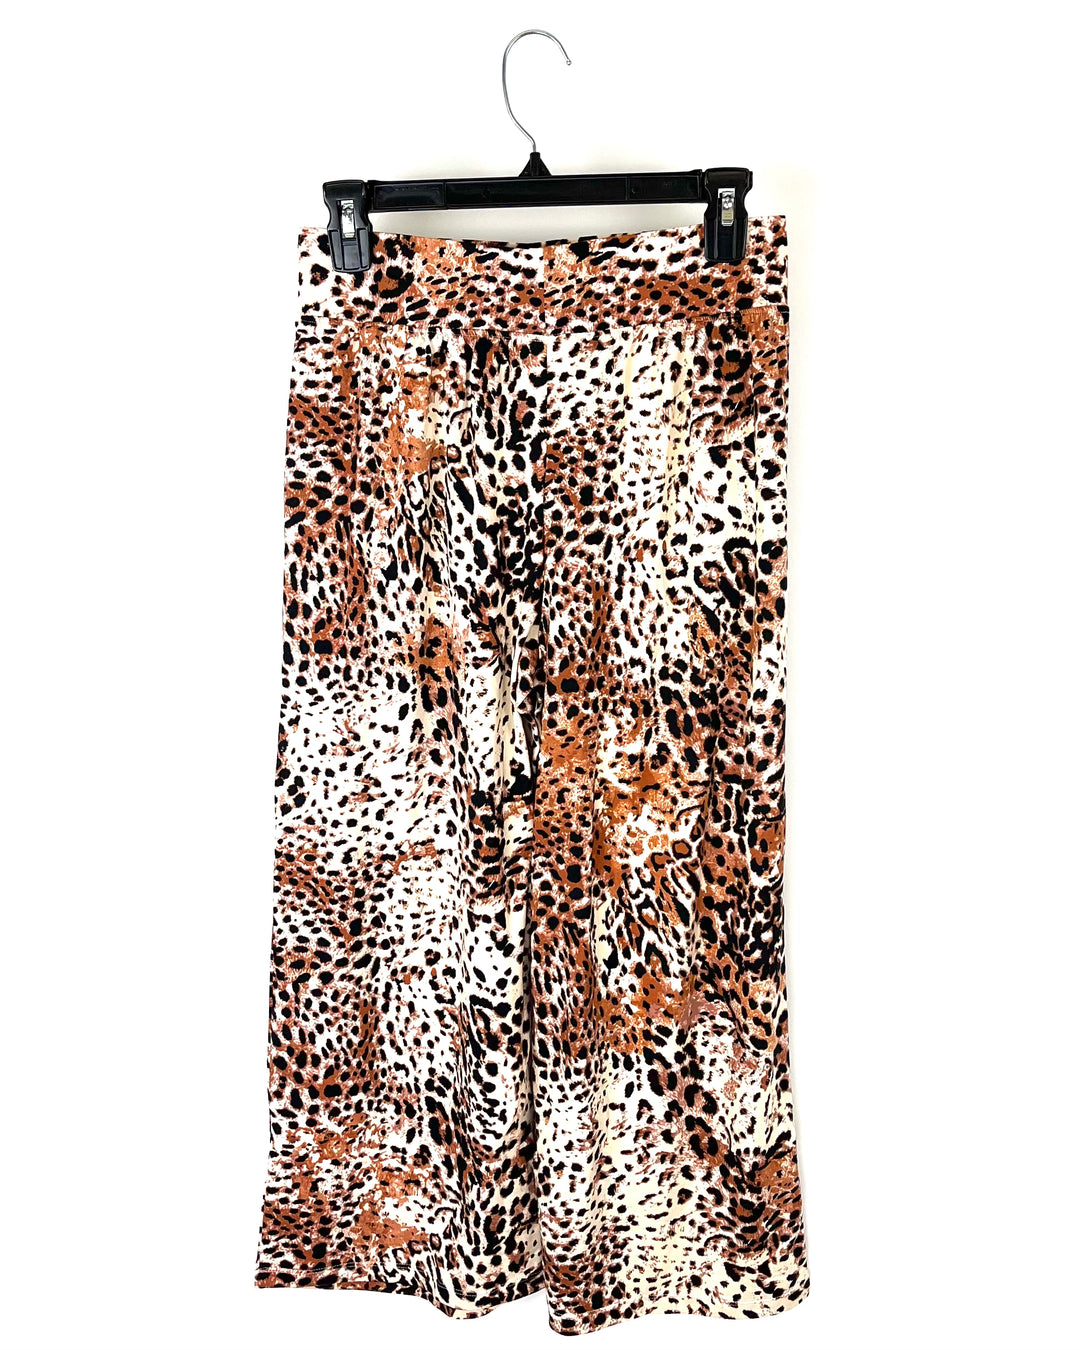 Cheetah Flowy Lounge Pants - Size 6-8